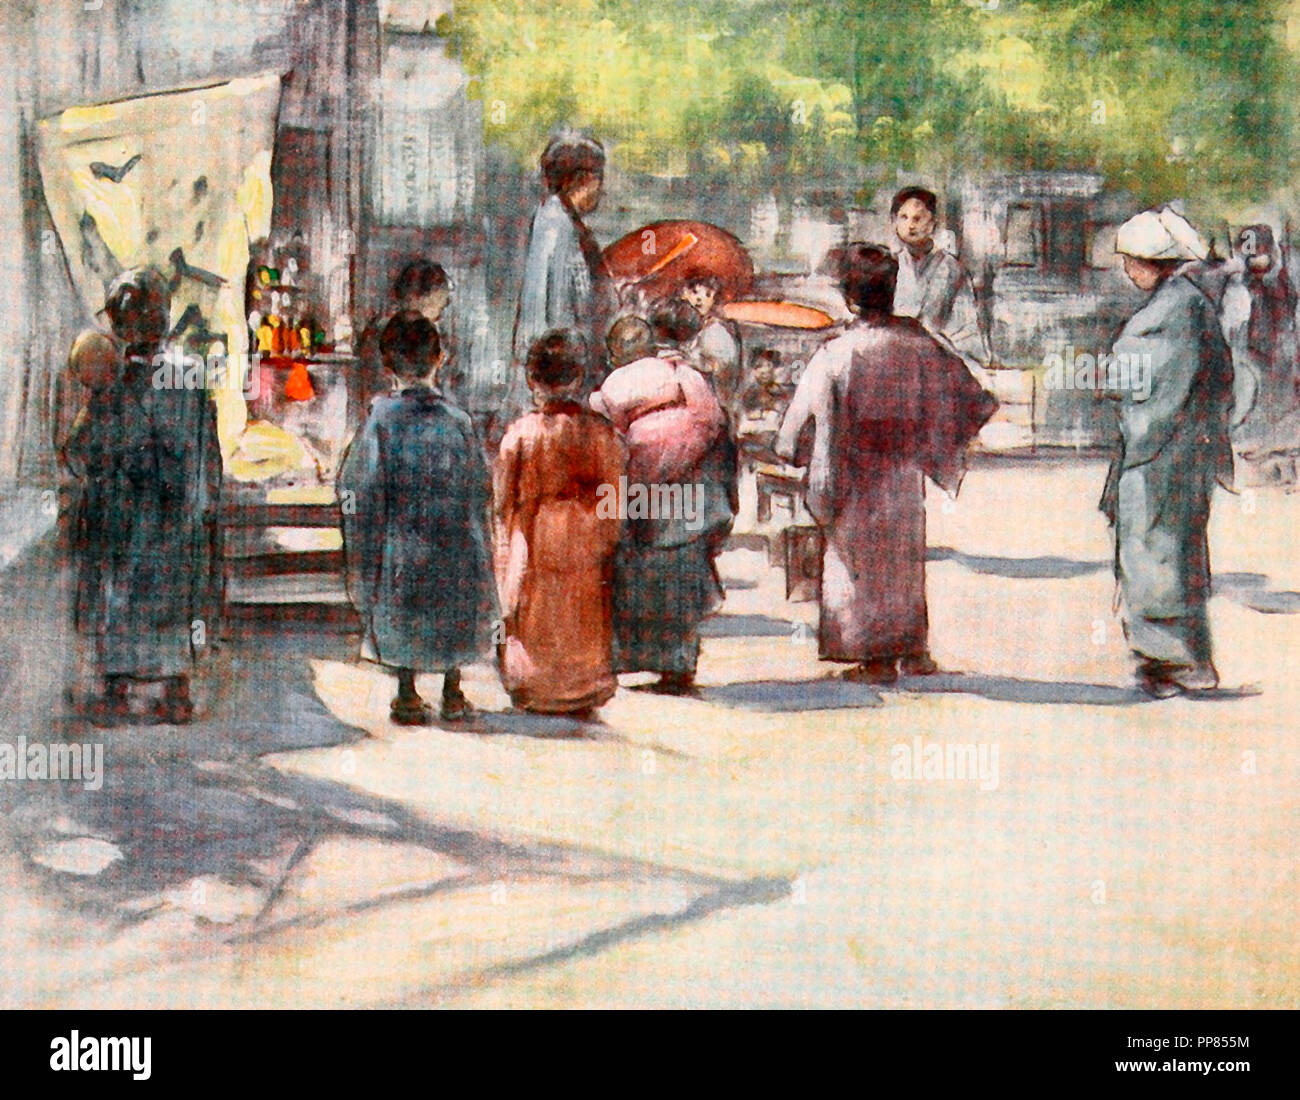 Vor dem Stall, Japan street scene, ca. 1900 Stockfoto